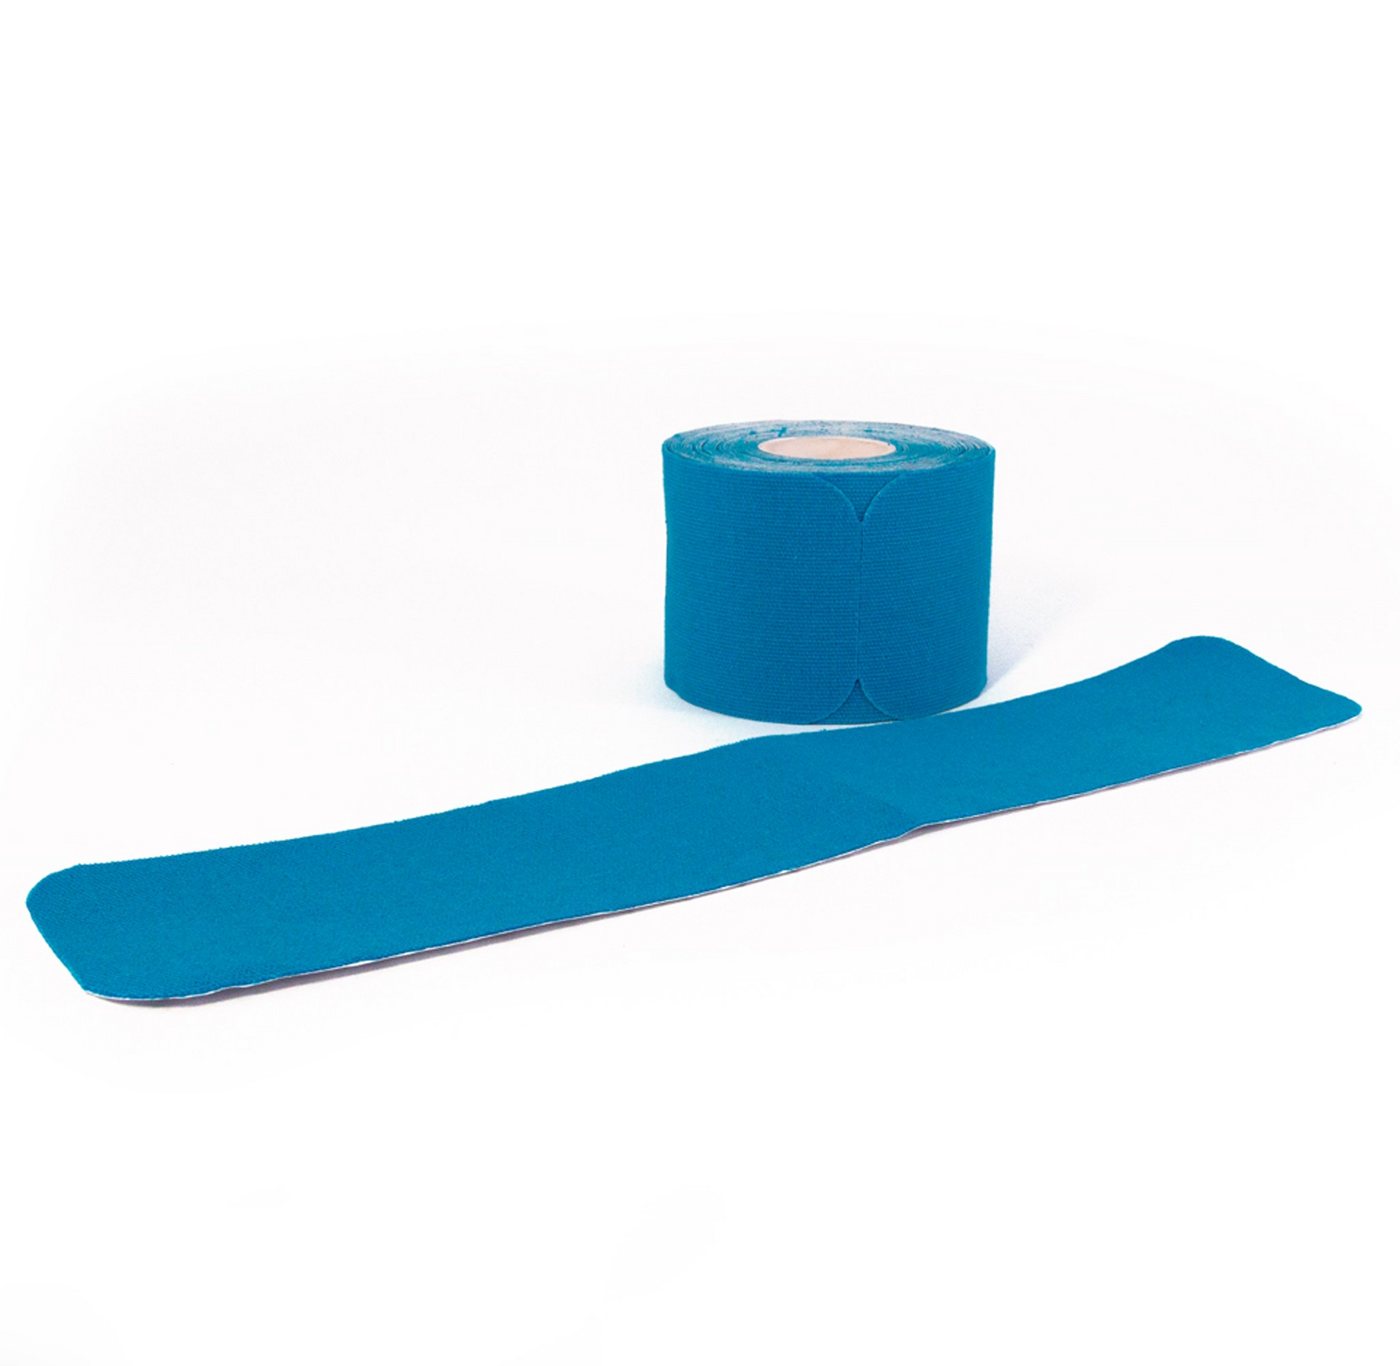 Axion Kinesiologie-Tape PRECUT, 20 vorgeschnittene Sport Tapes 25 x 5 cm - in blau, wasserfest • hautfreundlich • elastisch, Kinesio-Tapes selbstklebend von Axion